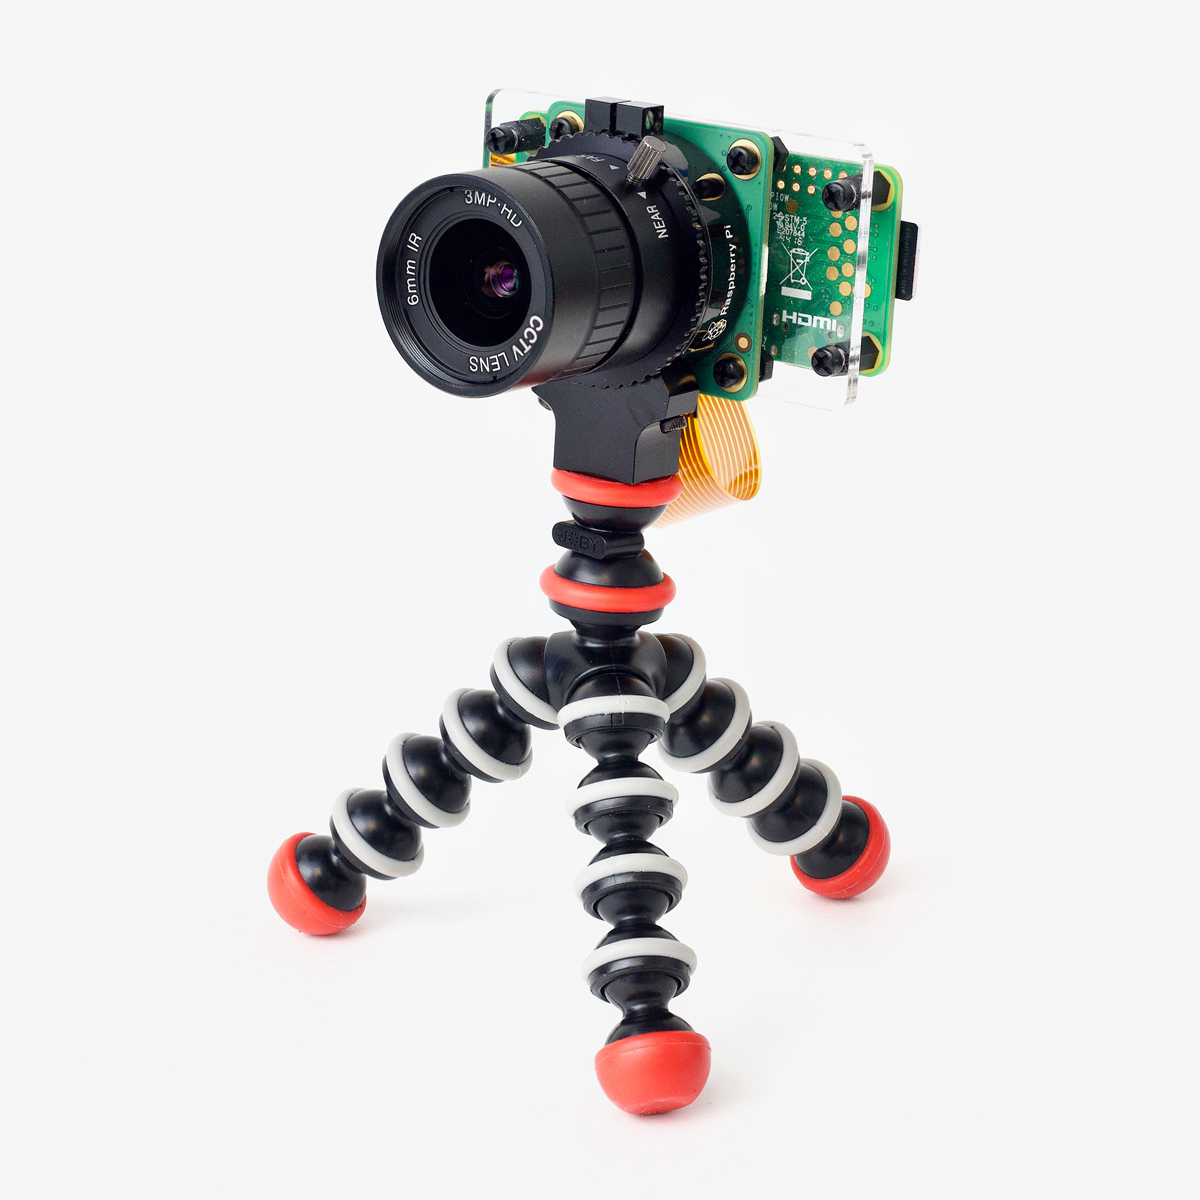 Pi Webcam on Tripod - Pi Zero W and HQ Camera